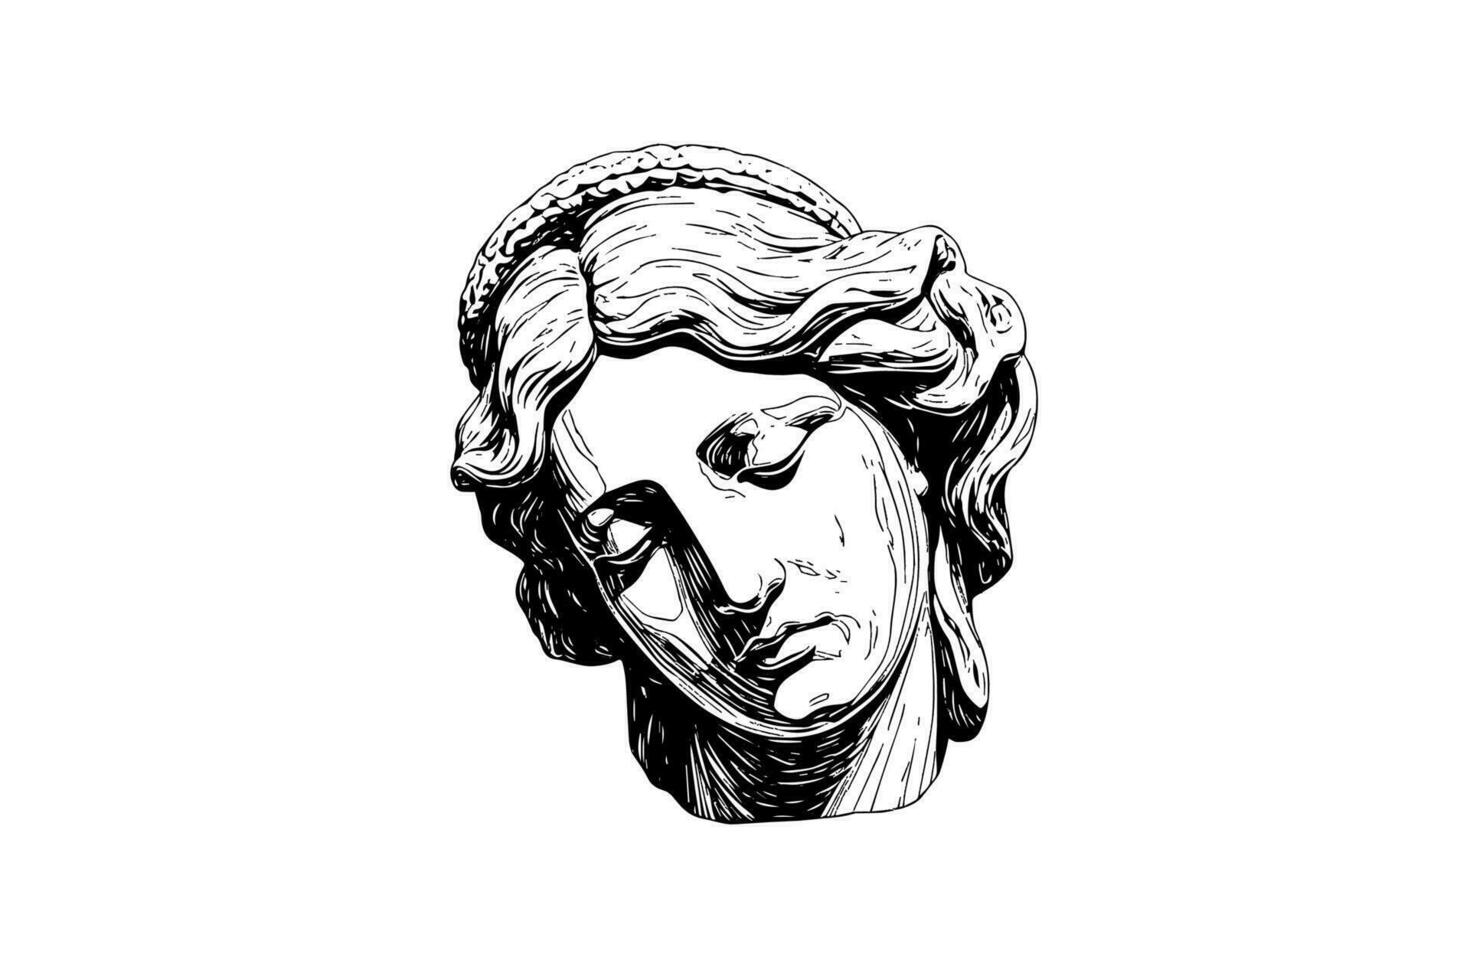 antik staty huvud av grekisk skulptur skiss gravyr stil vektor illustration.